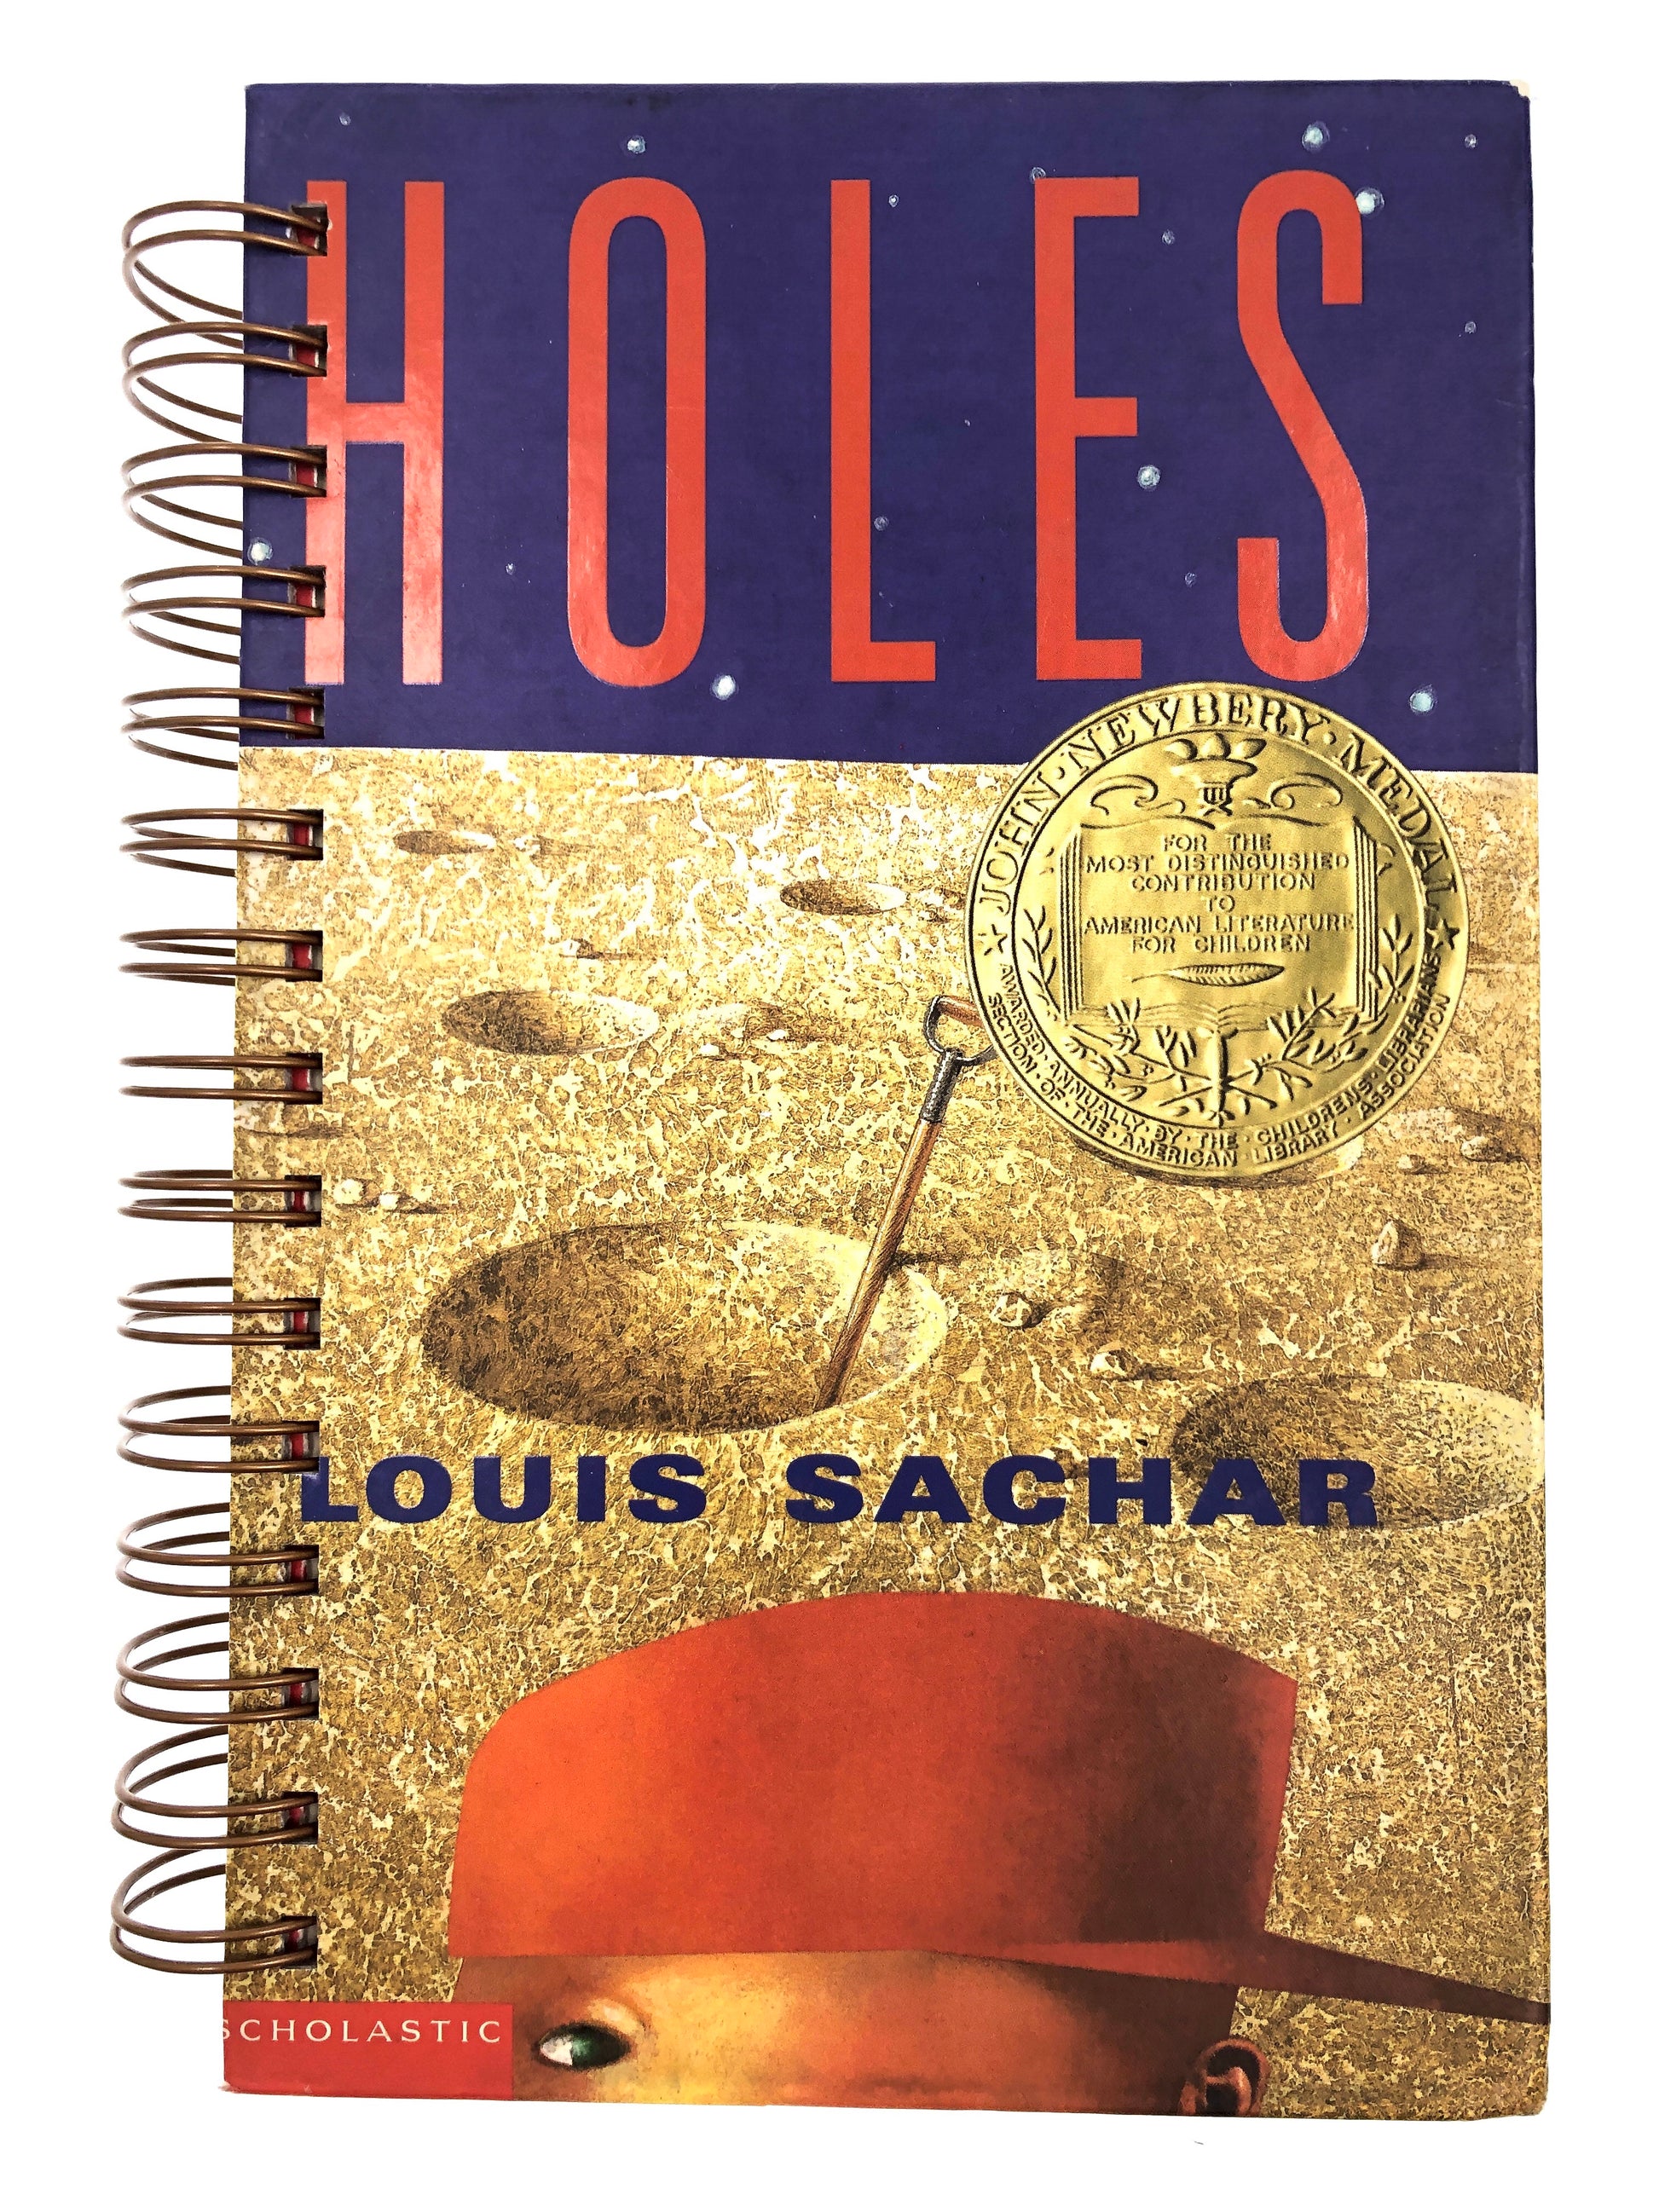 Holes - Scholastic Shop